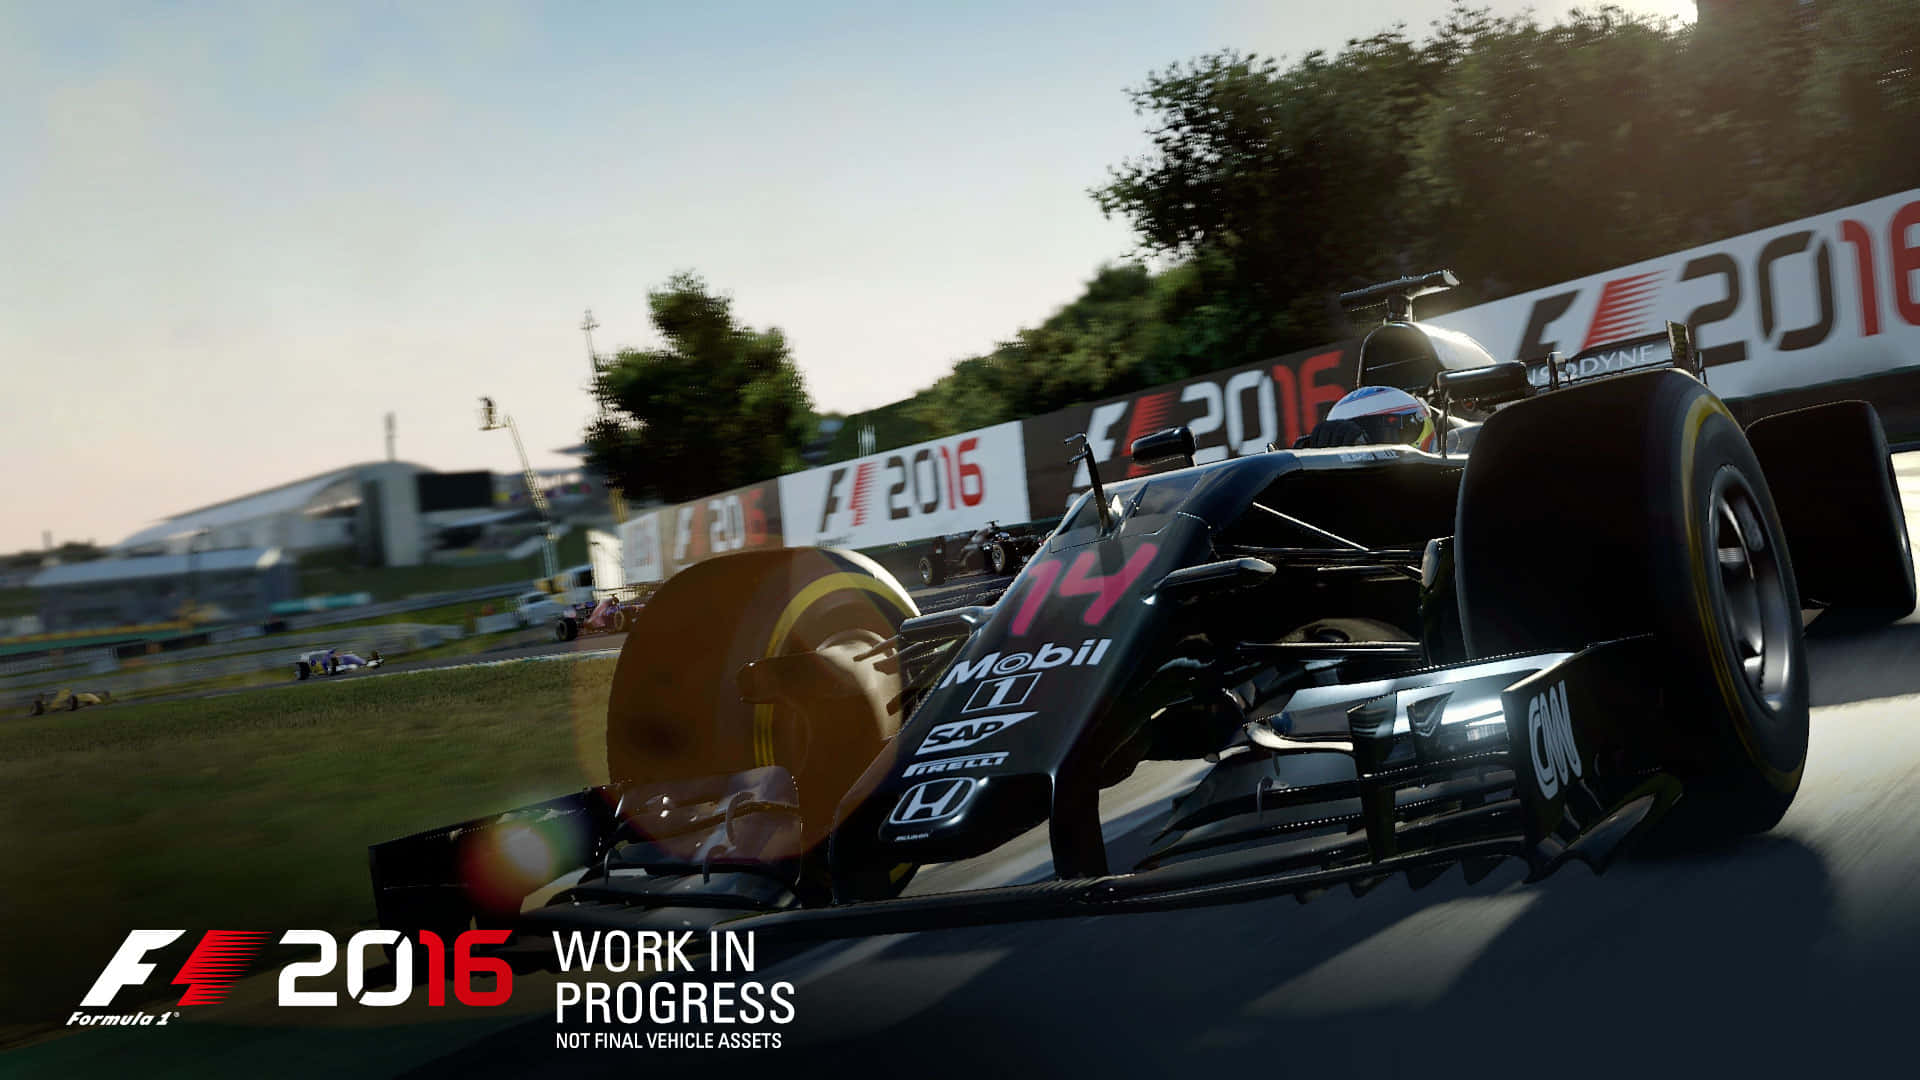 Capturade Pantalla Del Mundo En Progreso De F1 2015